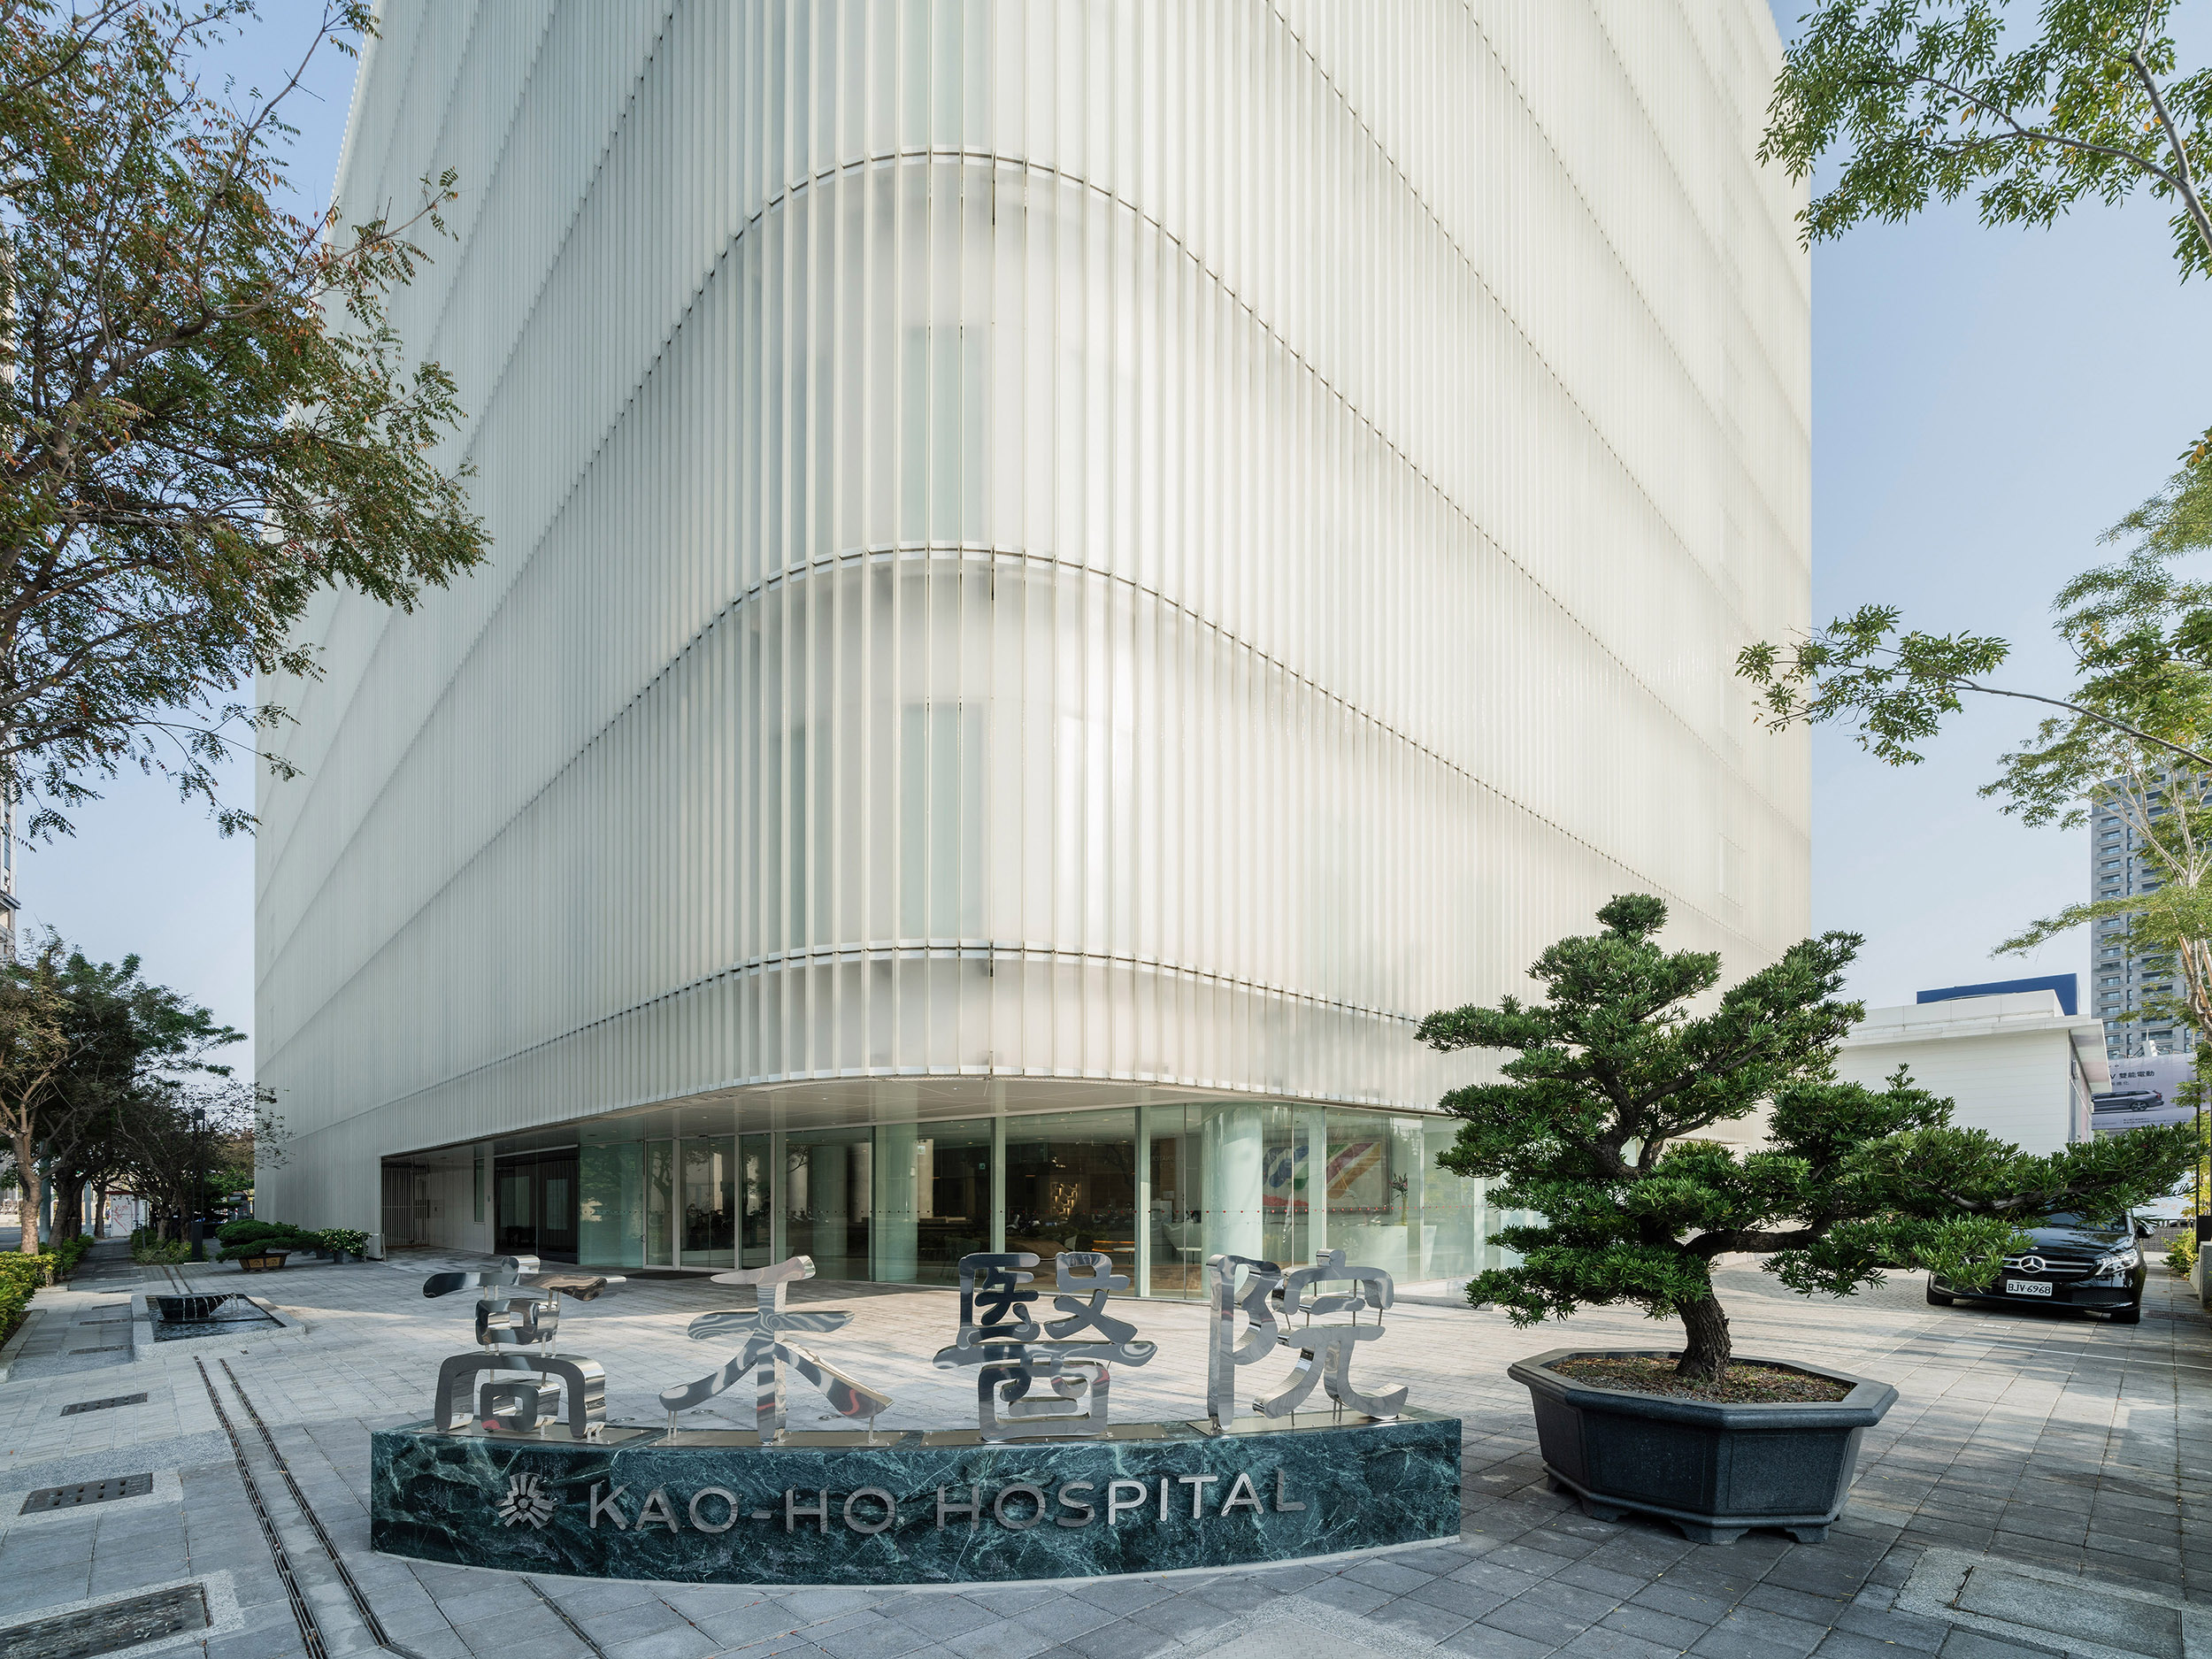 Kao-Ho Hospital